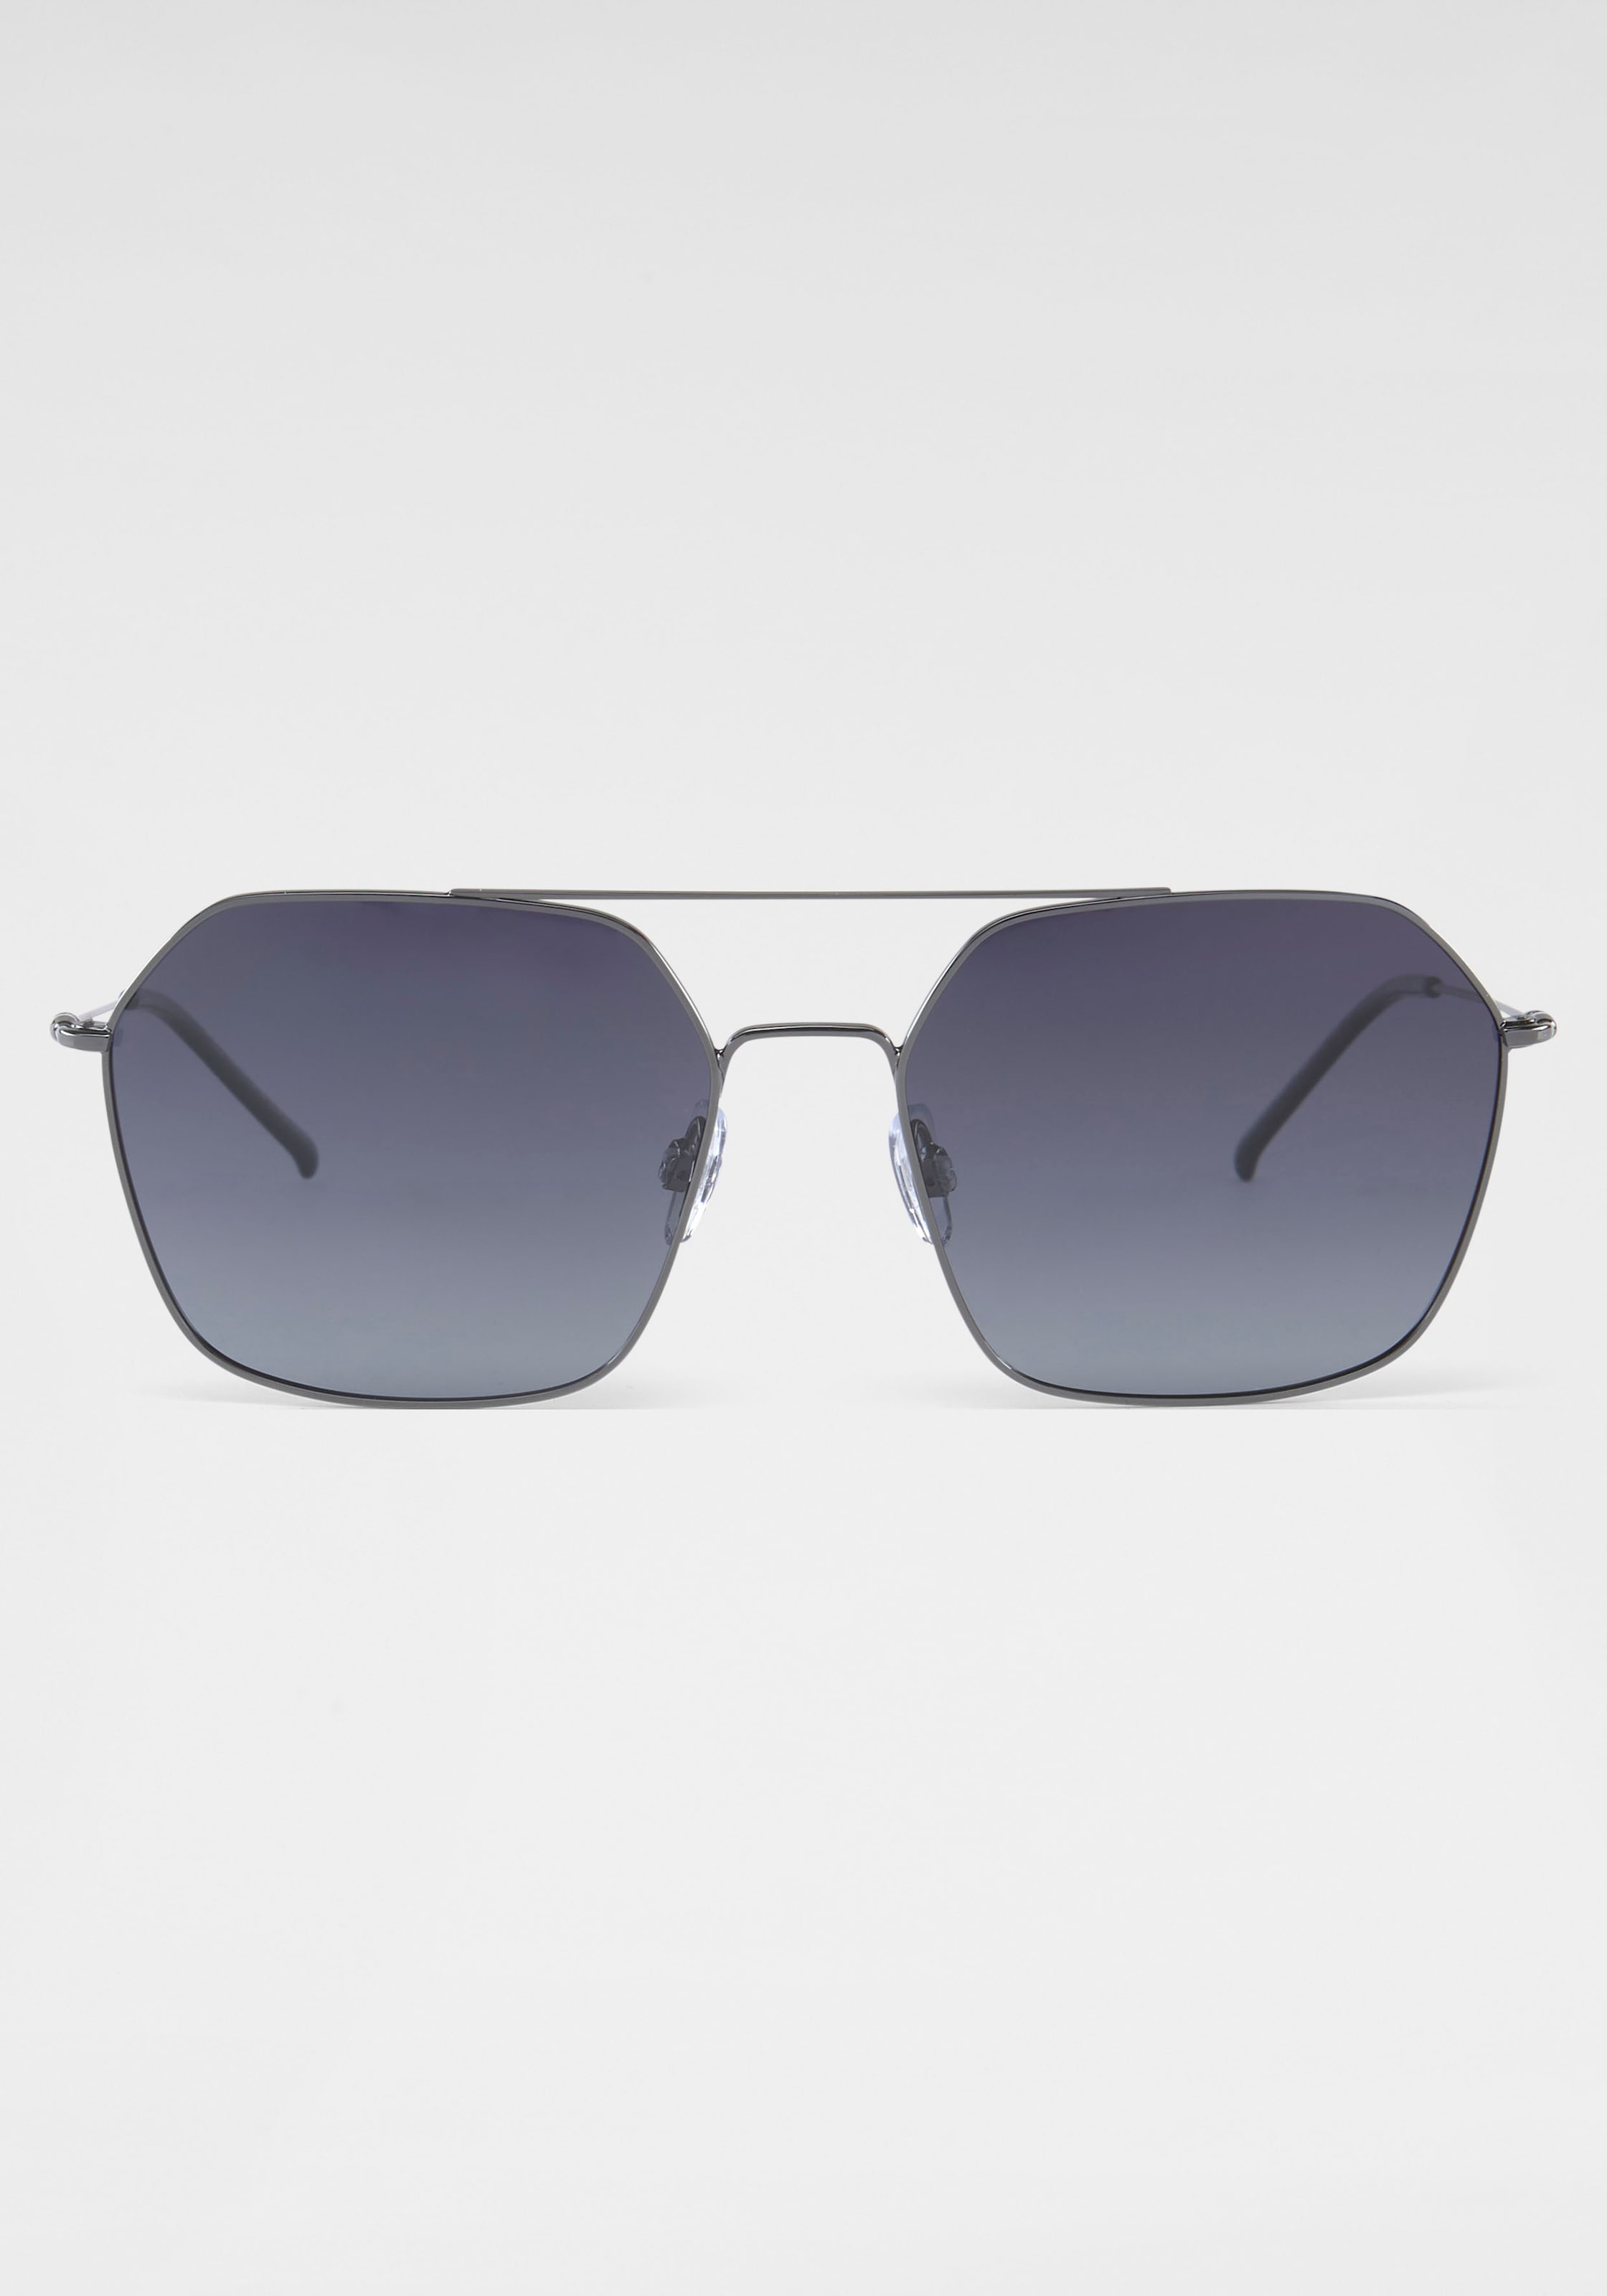 HIS Jelmoli-Versand Eyewear online Schweiz shoppen Sonnenbrille bei